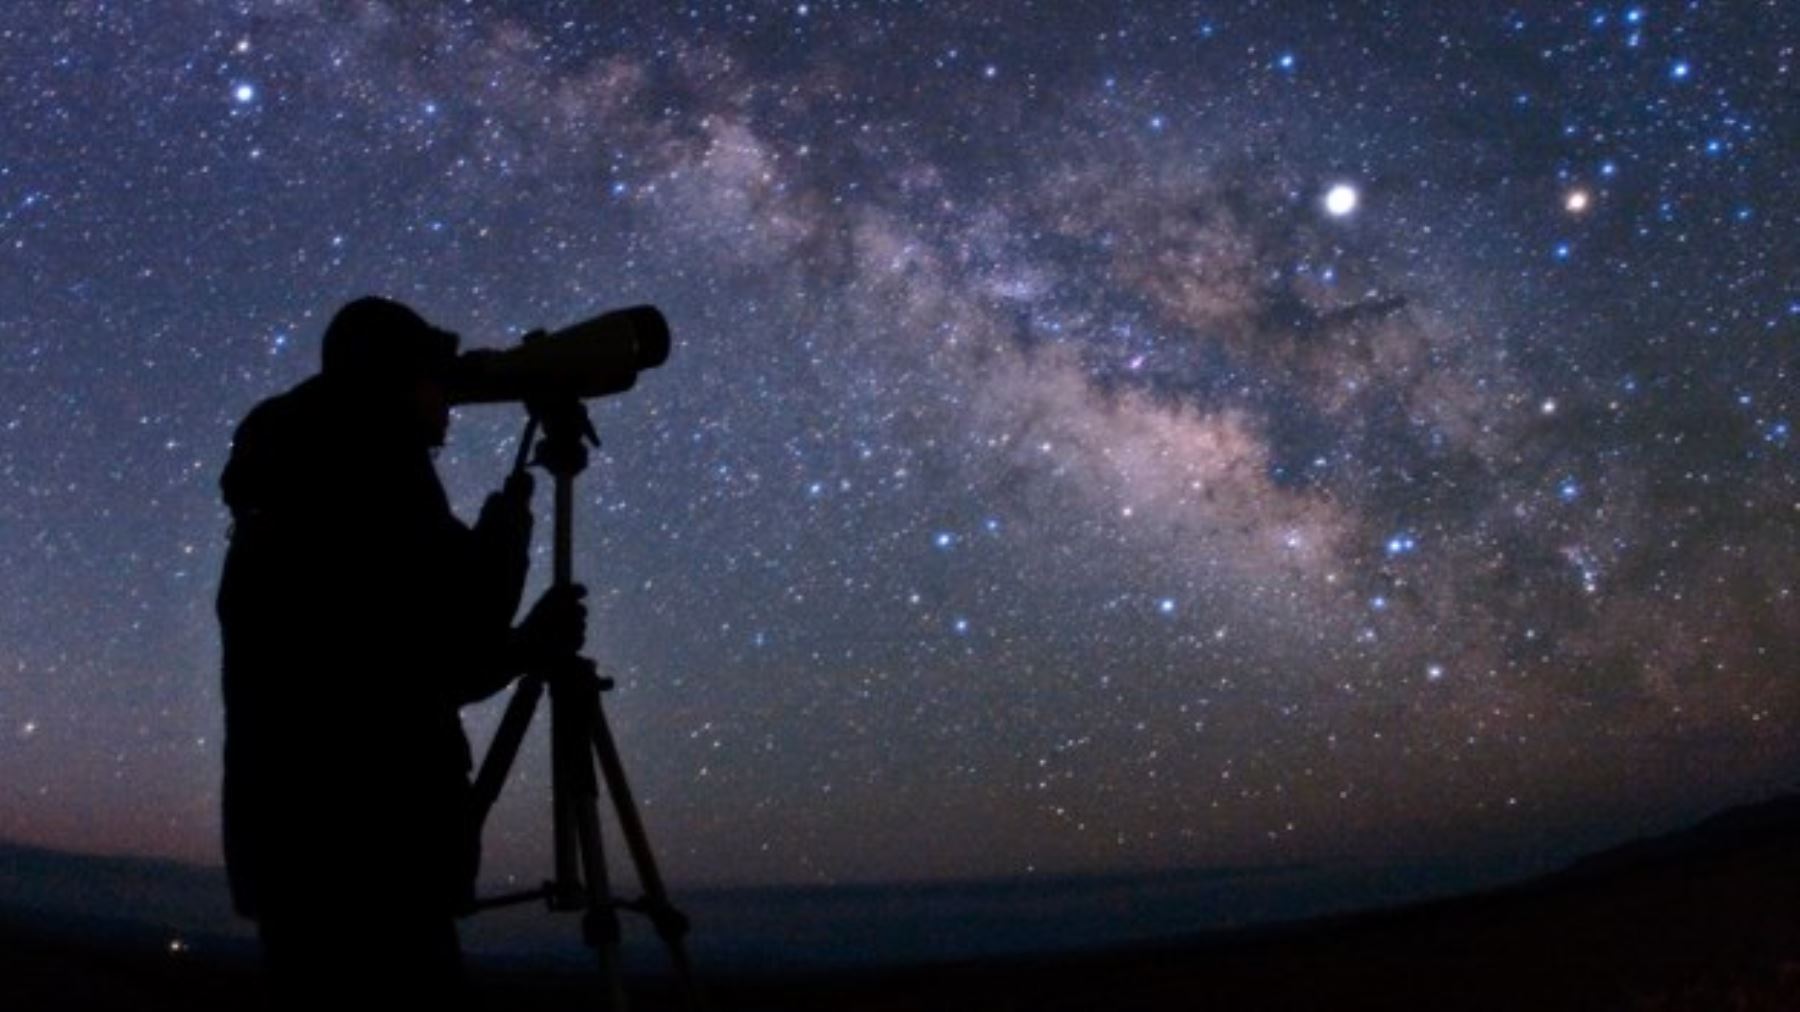 Observaci贸n de estrellas en Waqrapukara 2  d铆as 1 noche